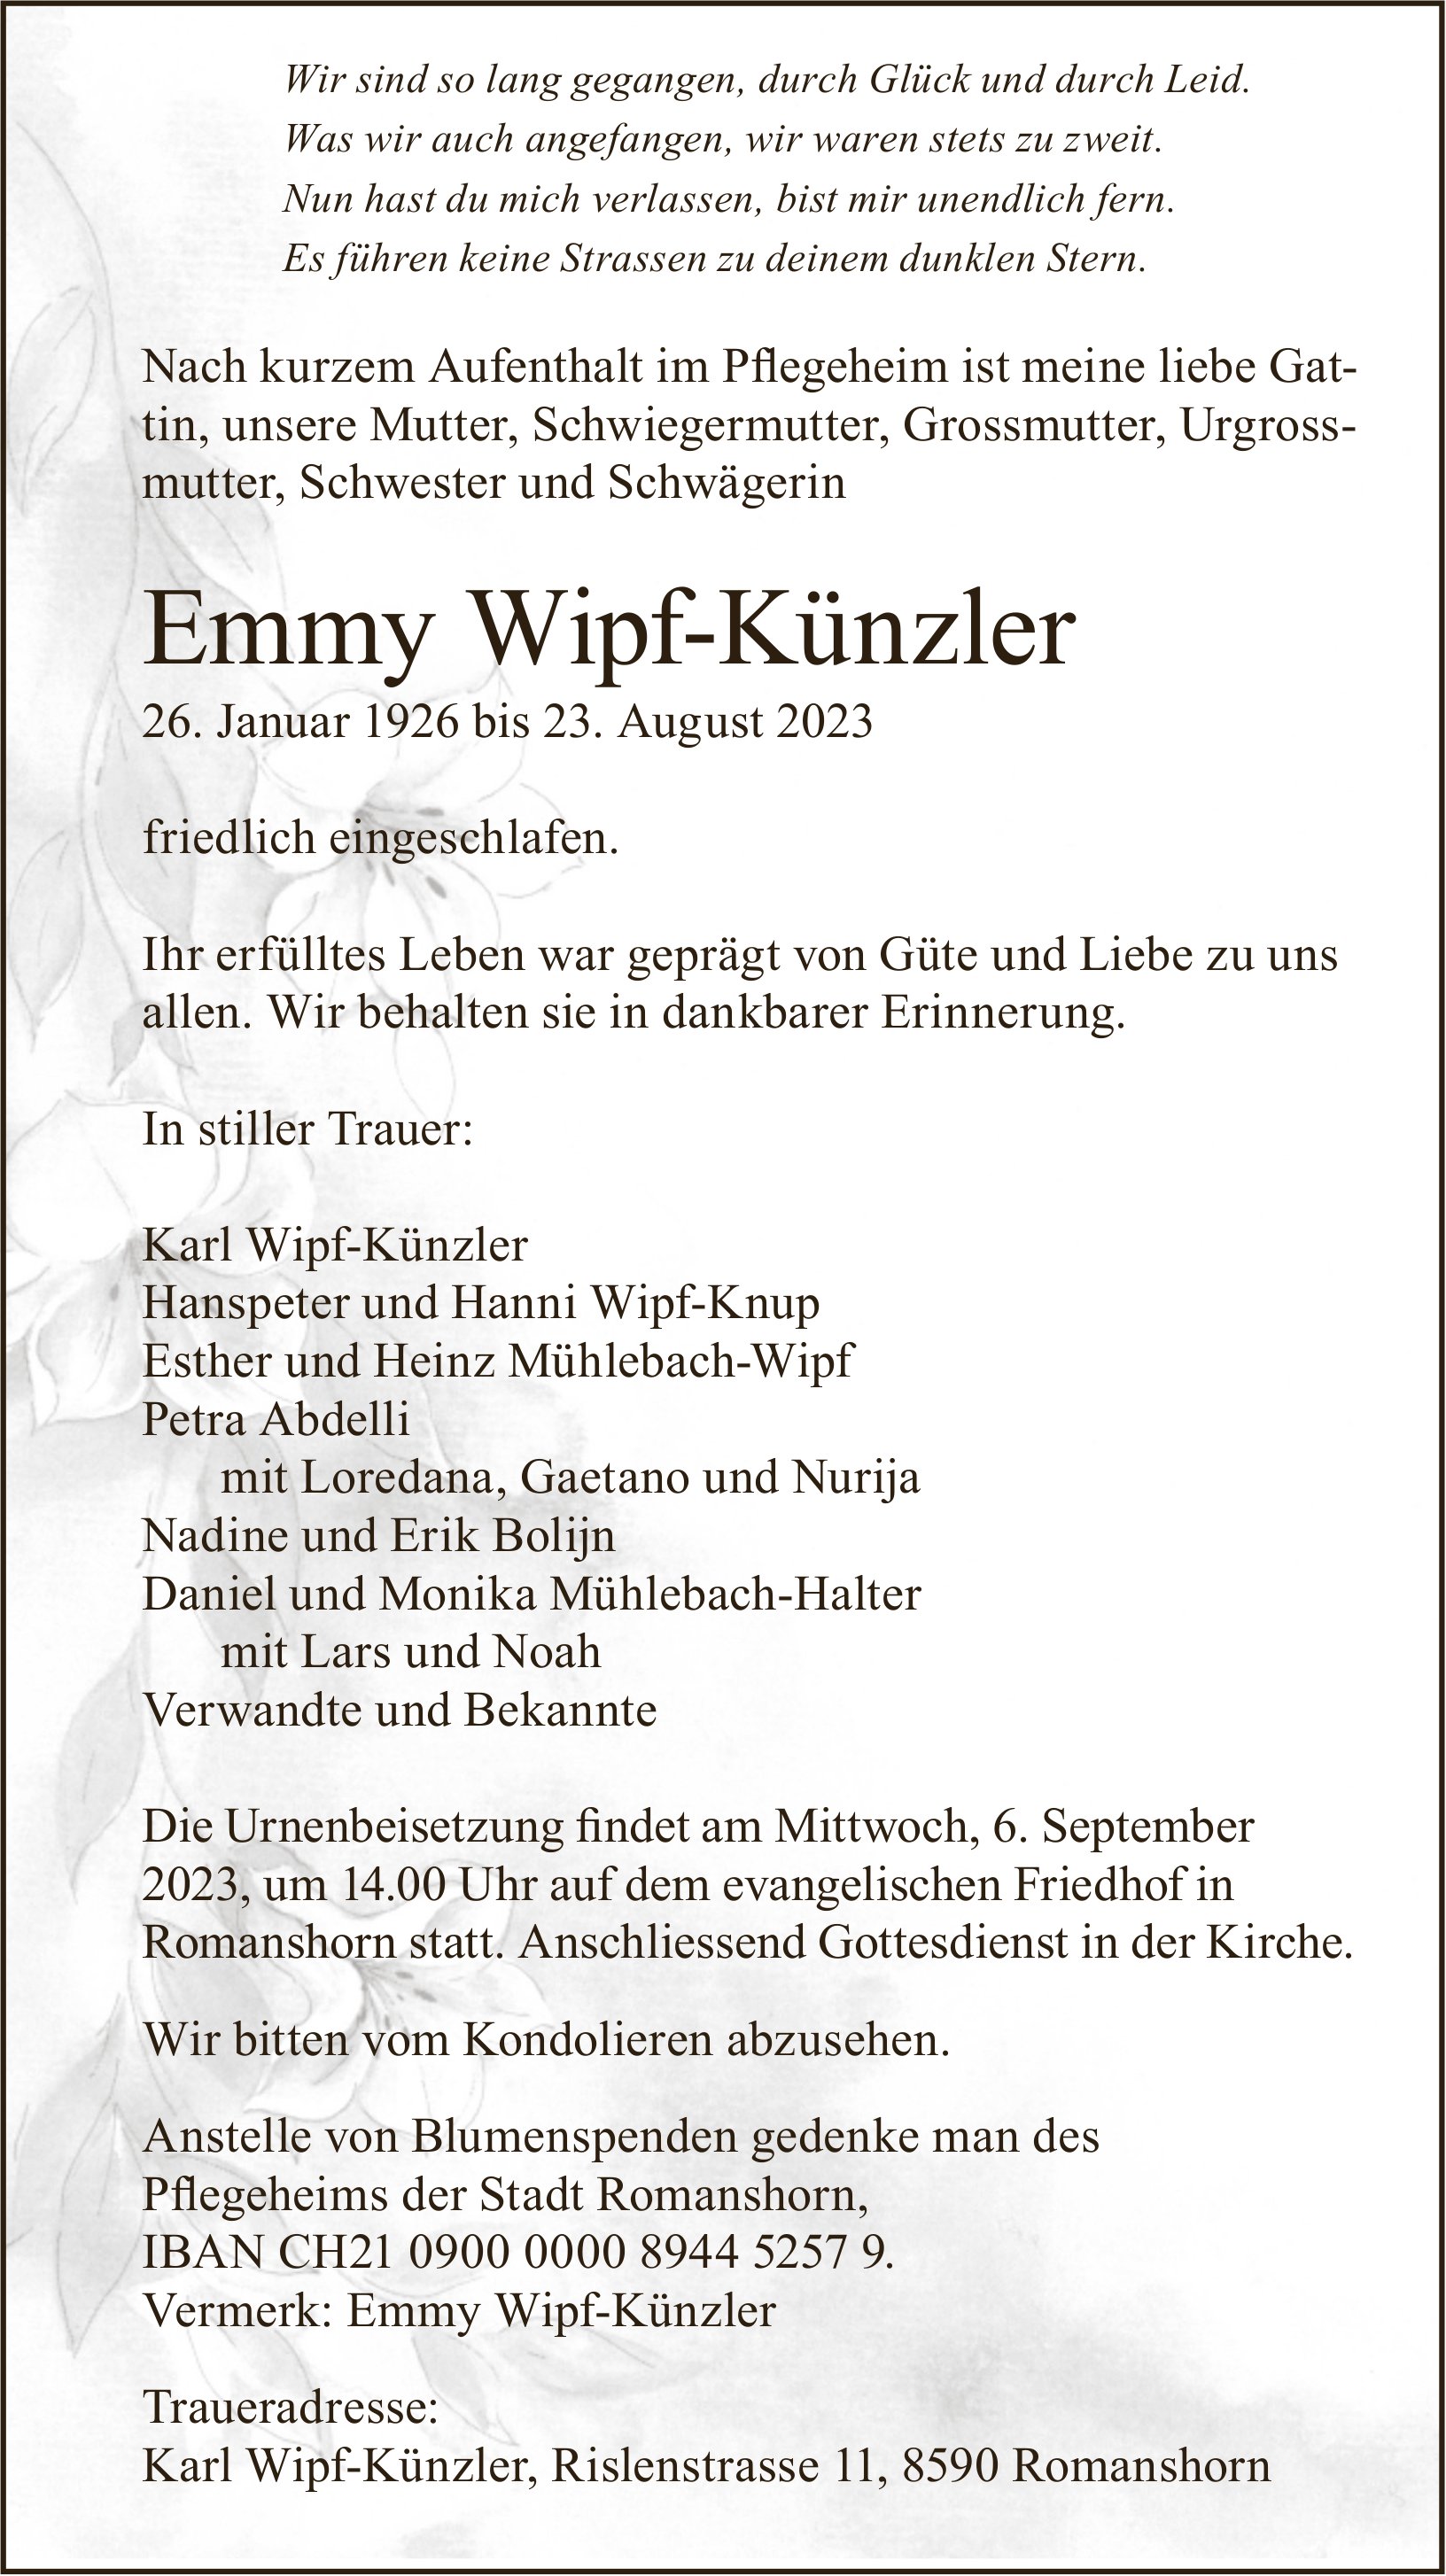 Wipf-Künzler Emmy, August 2023 / TA